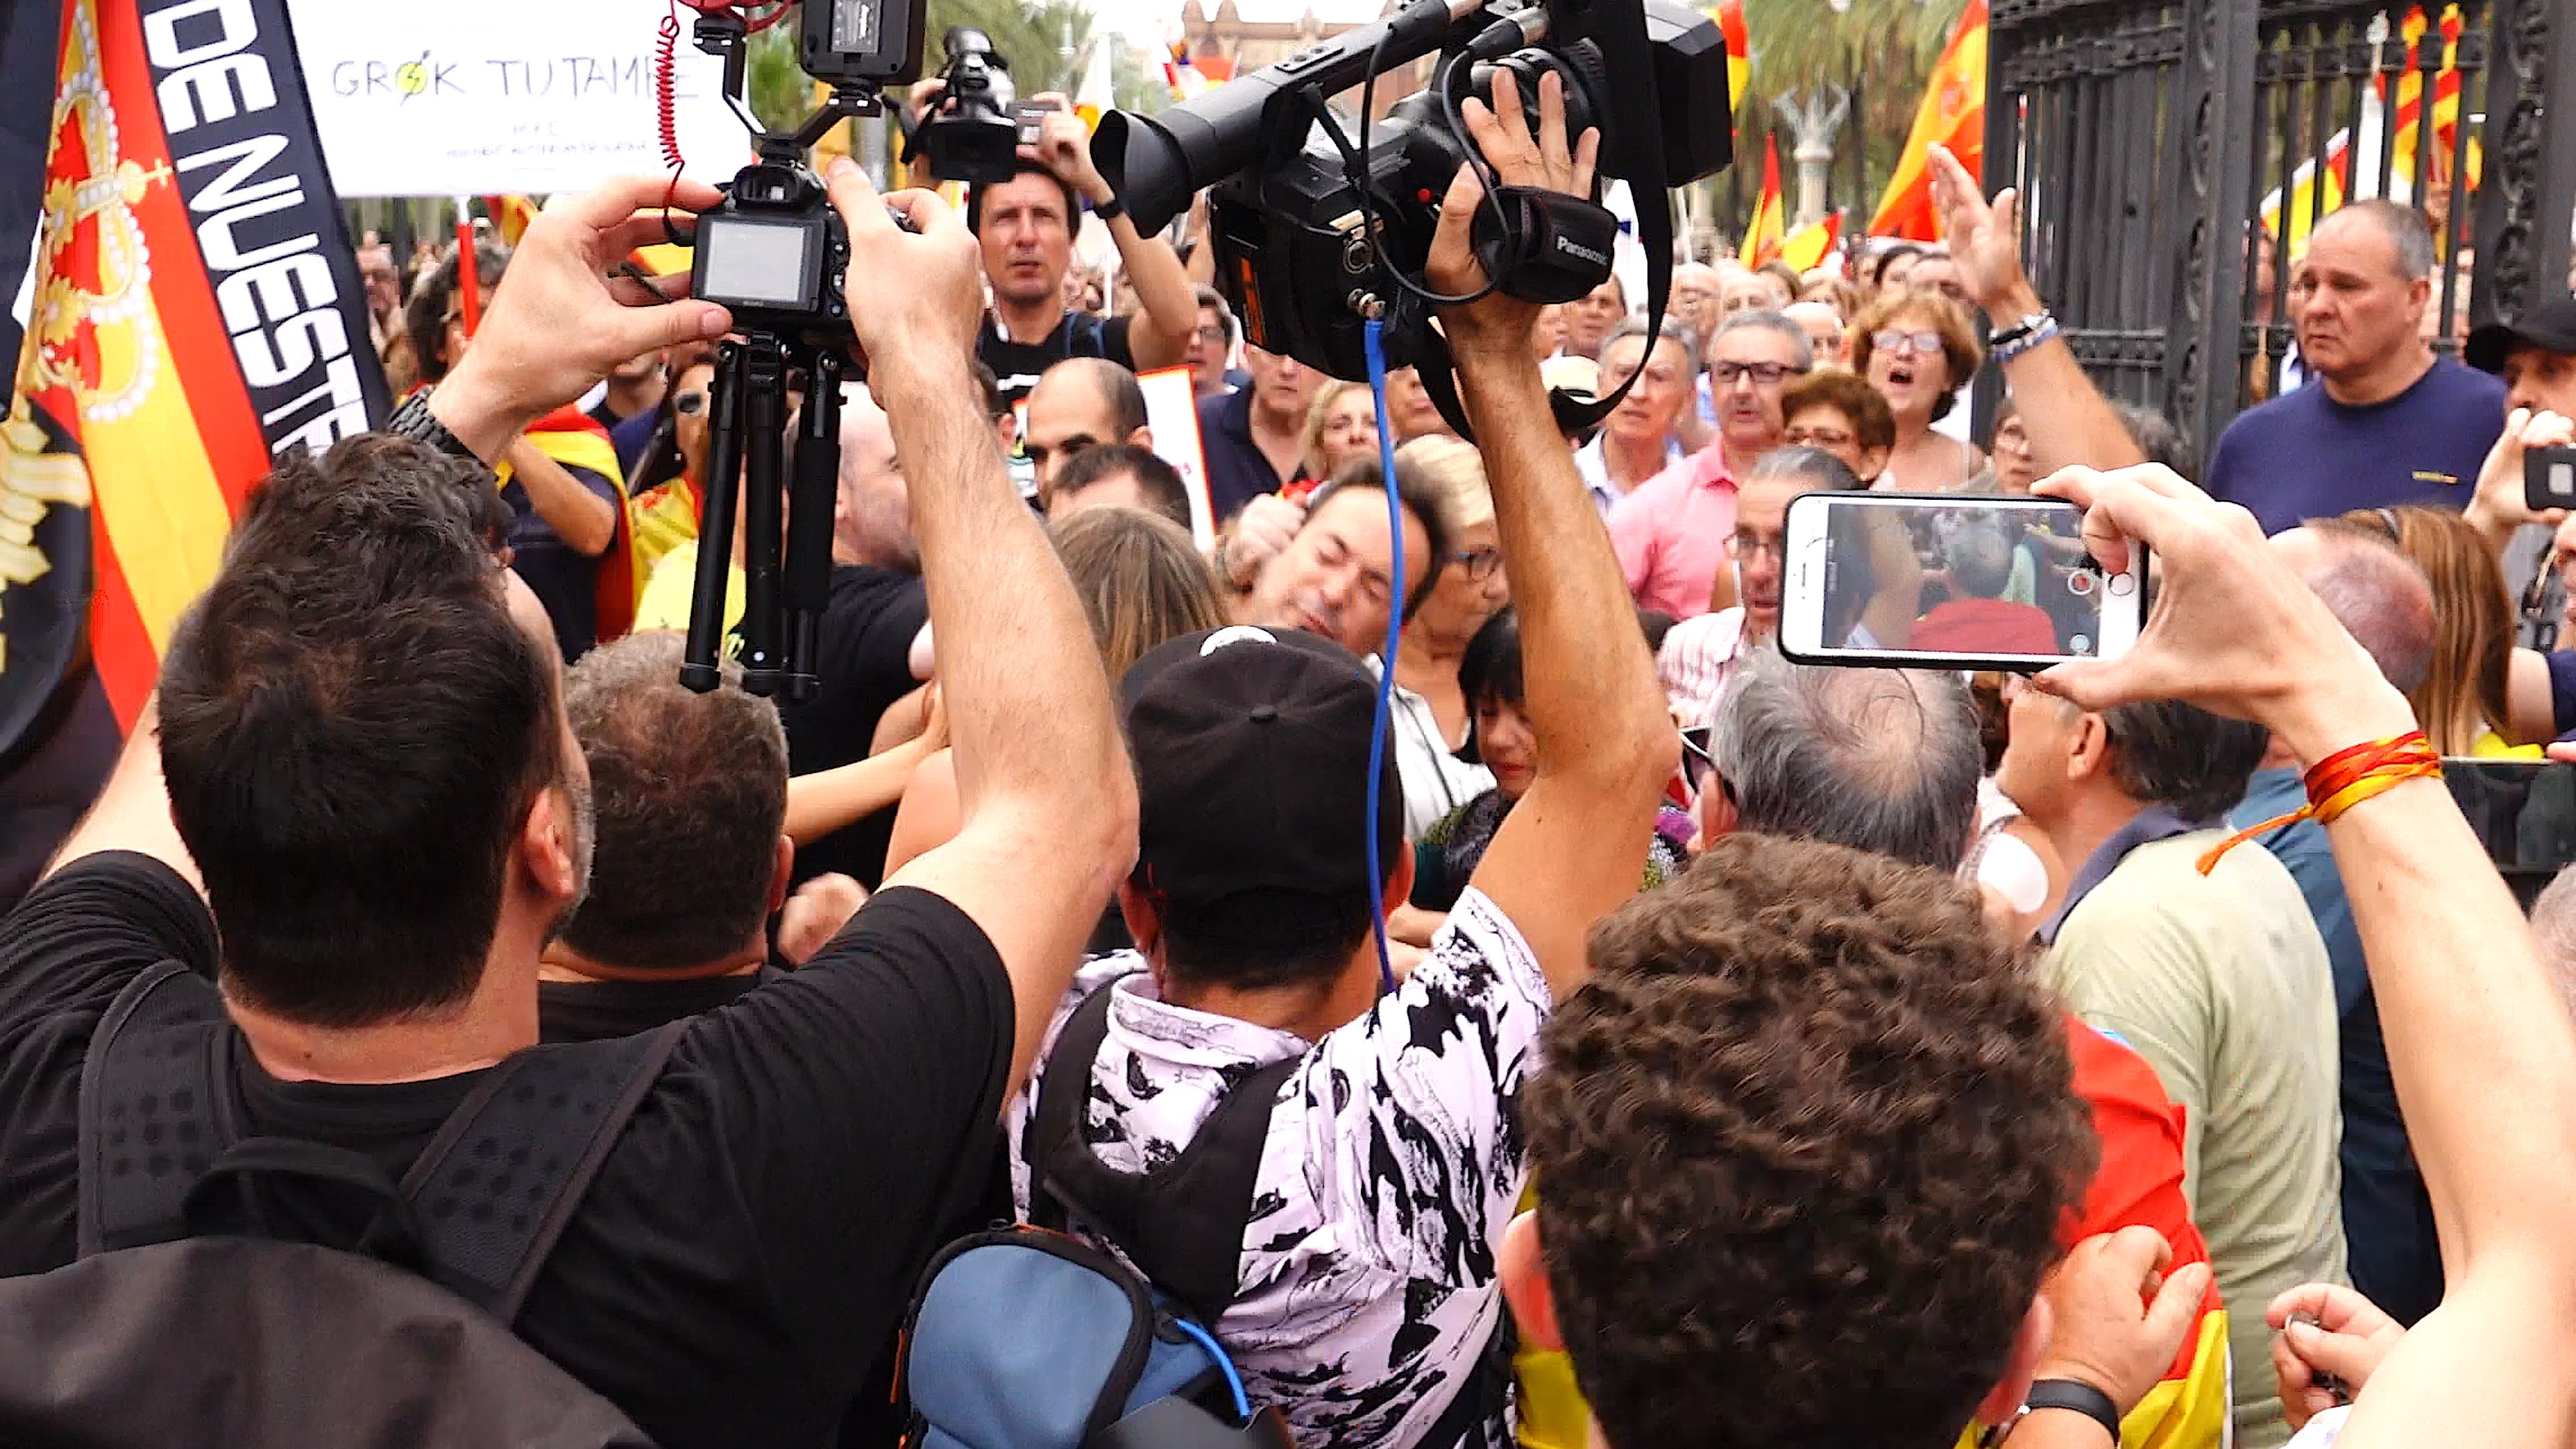 'Telepolis': "Ultras españoles atacan a un cámara en Catalunya"